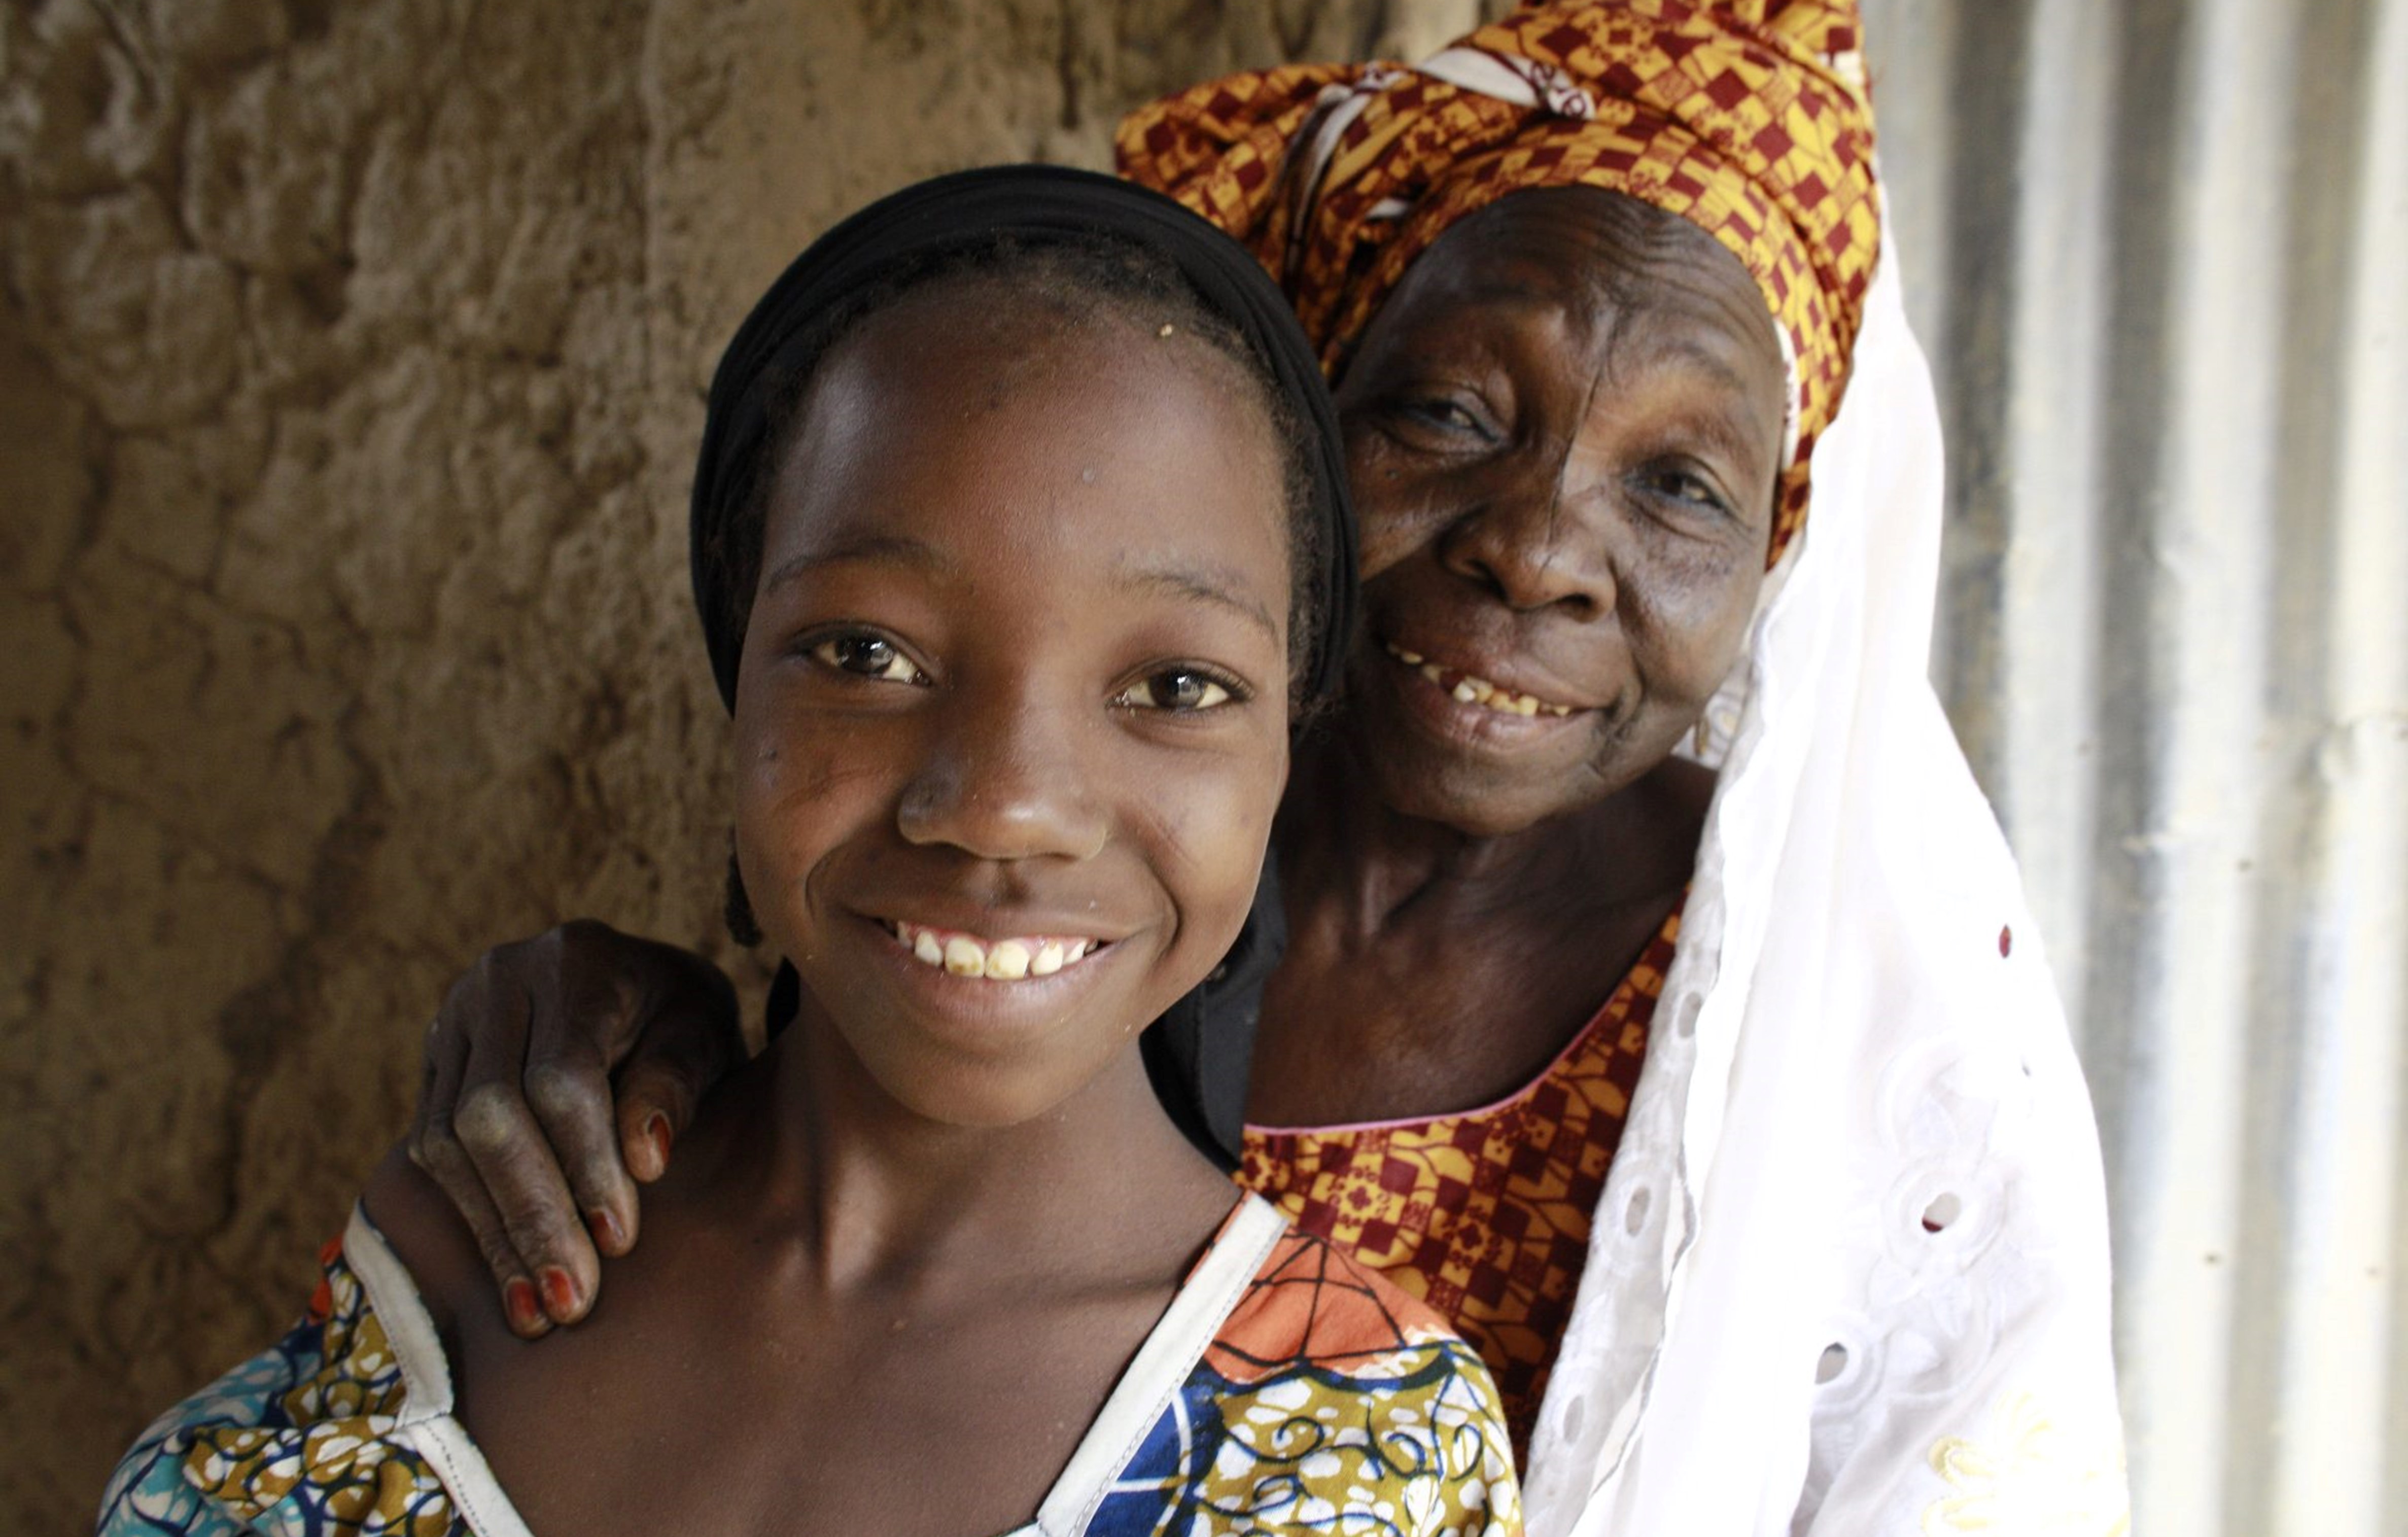 Spare-låne-grupper i Afrika - en symbolsk gave